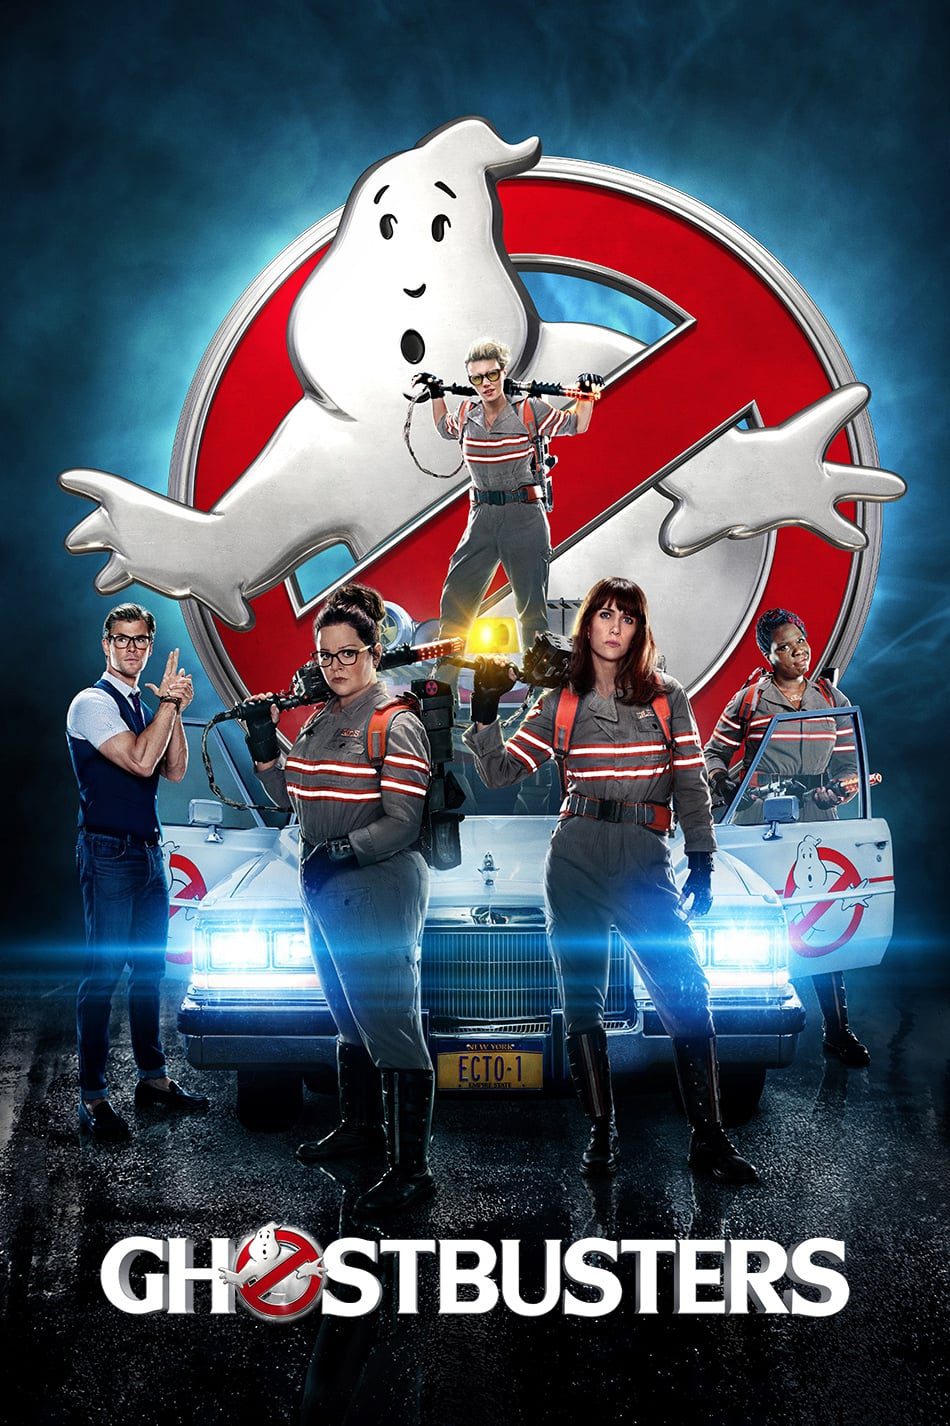 ดูหนังออนไลน์ฟรี Ghostbusters บริษัทกำจัดผี ภาค 3